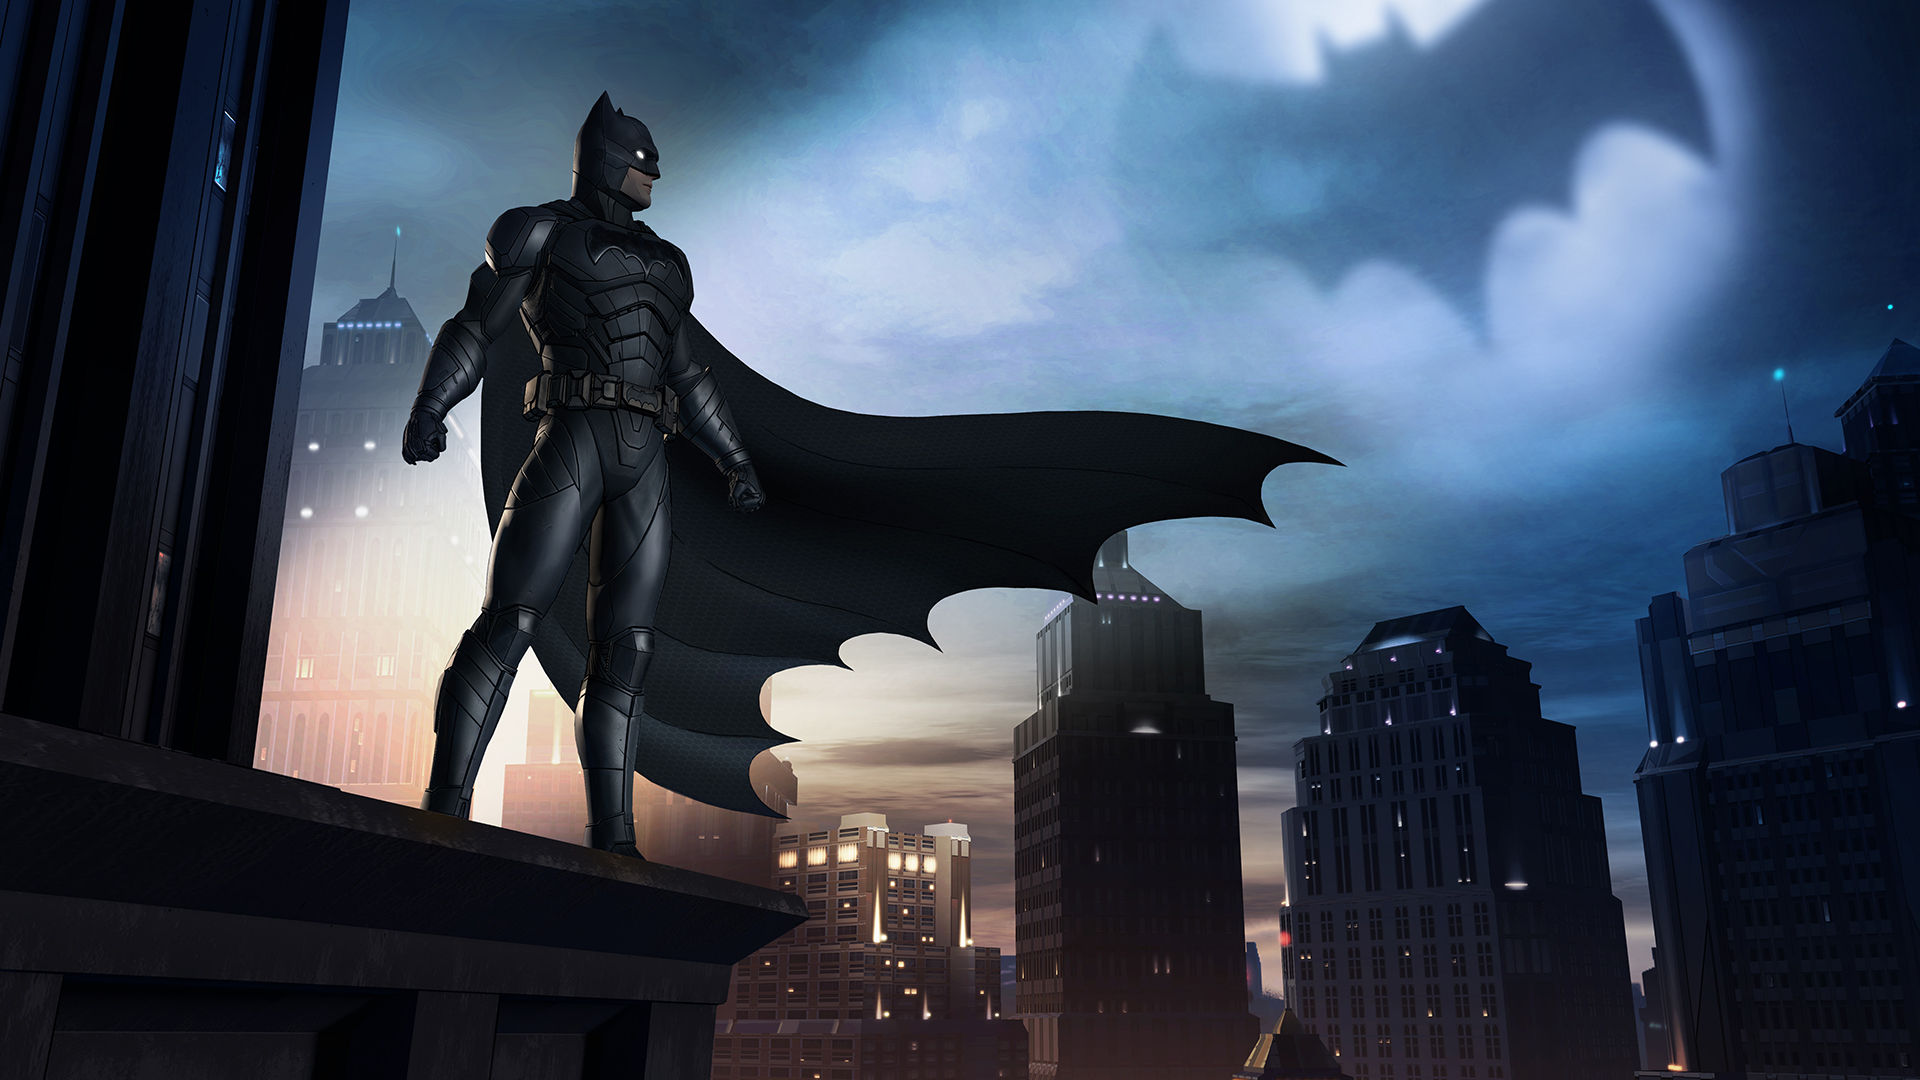 Скачать обои Бэтмен: Серия Telltale на телефон бесплатно